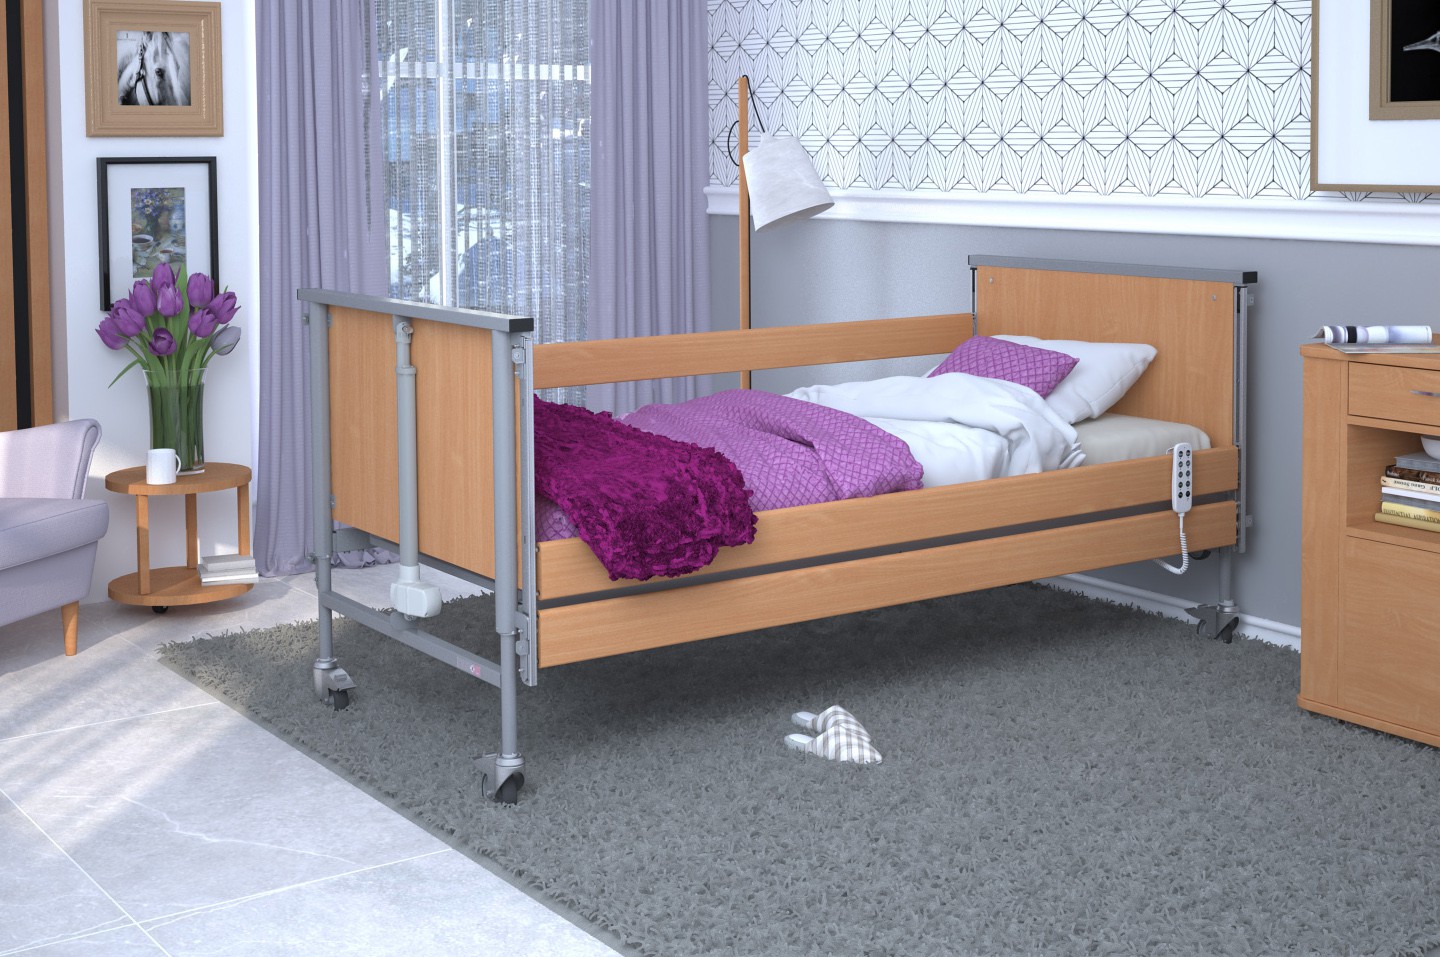 Łóżko rehabilitacyjne TAURUS 2 regulowane RehaBed : Rodzaj leża - Drewniane, Standardowe kolory ramy łóżka - Buk, Stolik typu Tablet: - Nie, Wysięgnik (max odciążenie 80 kg): - Nie